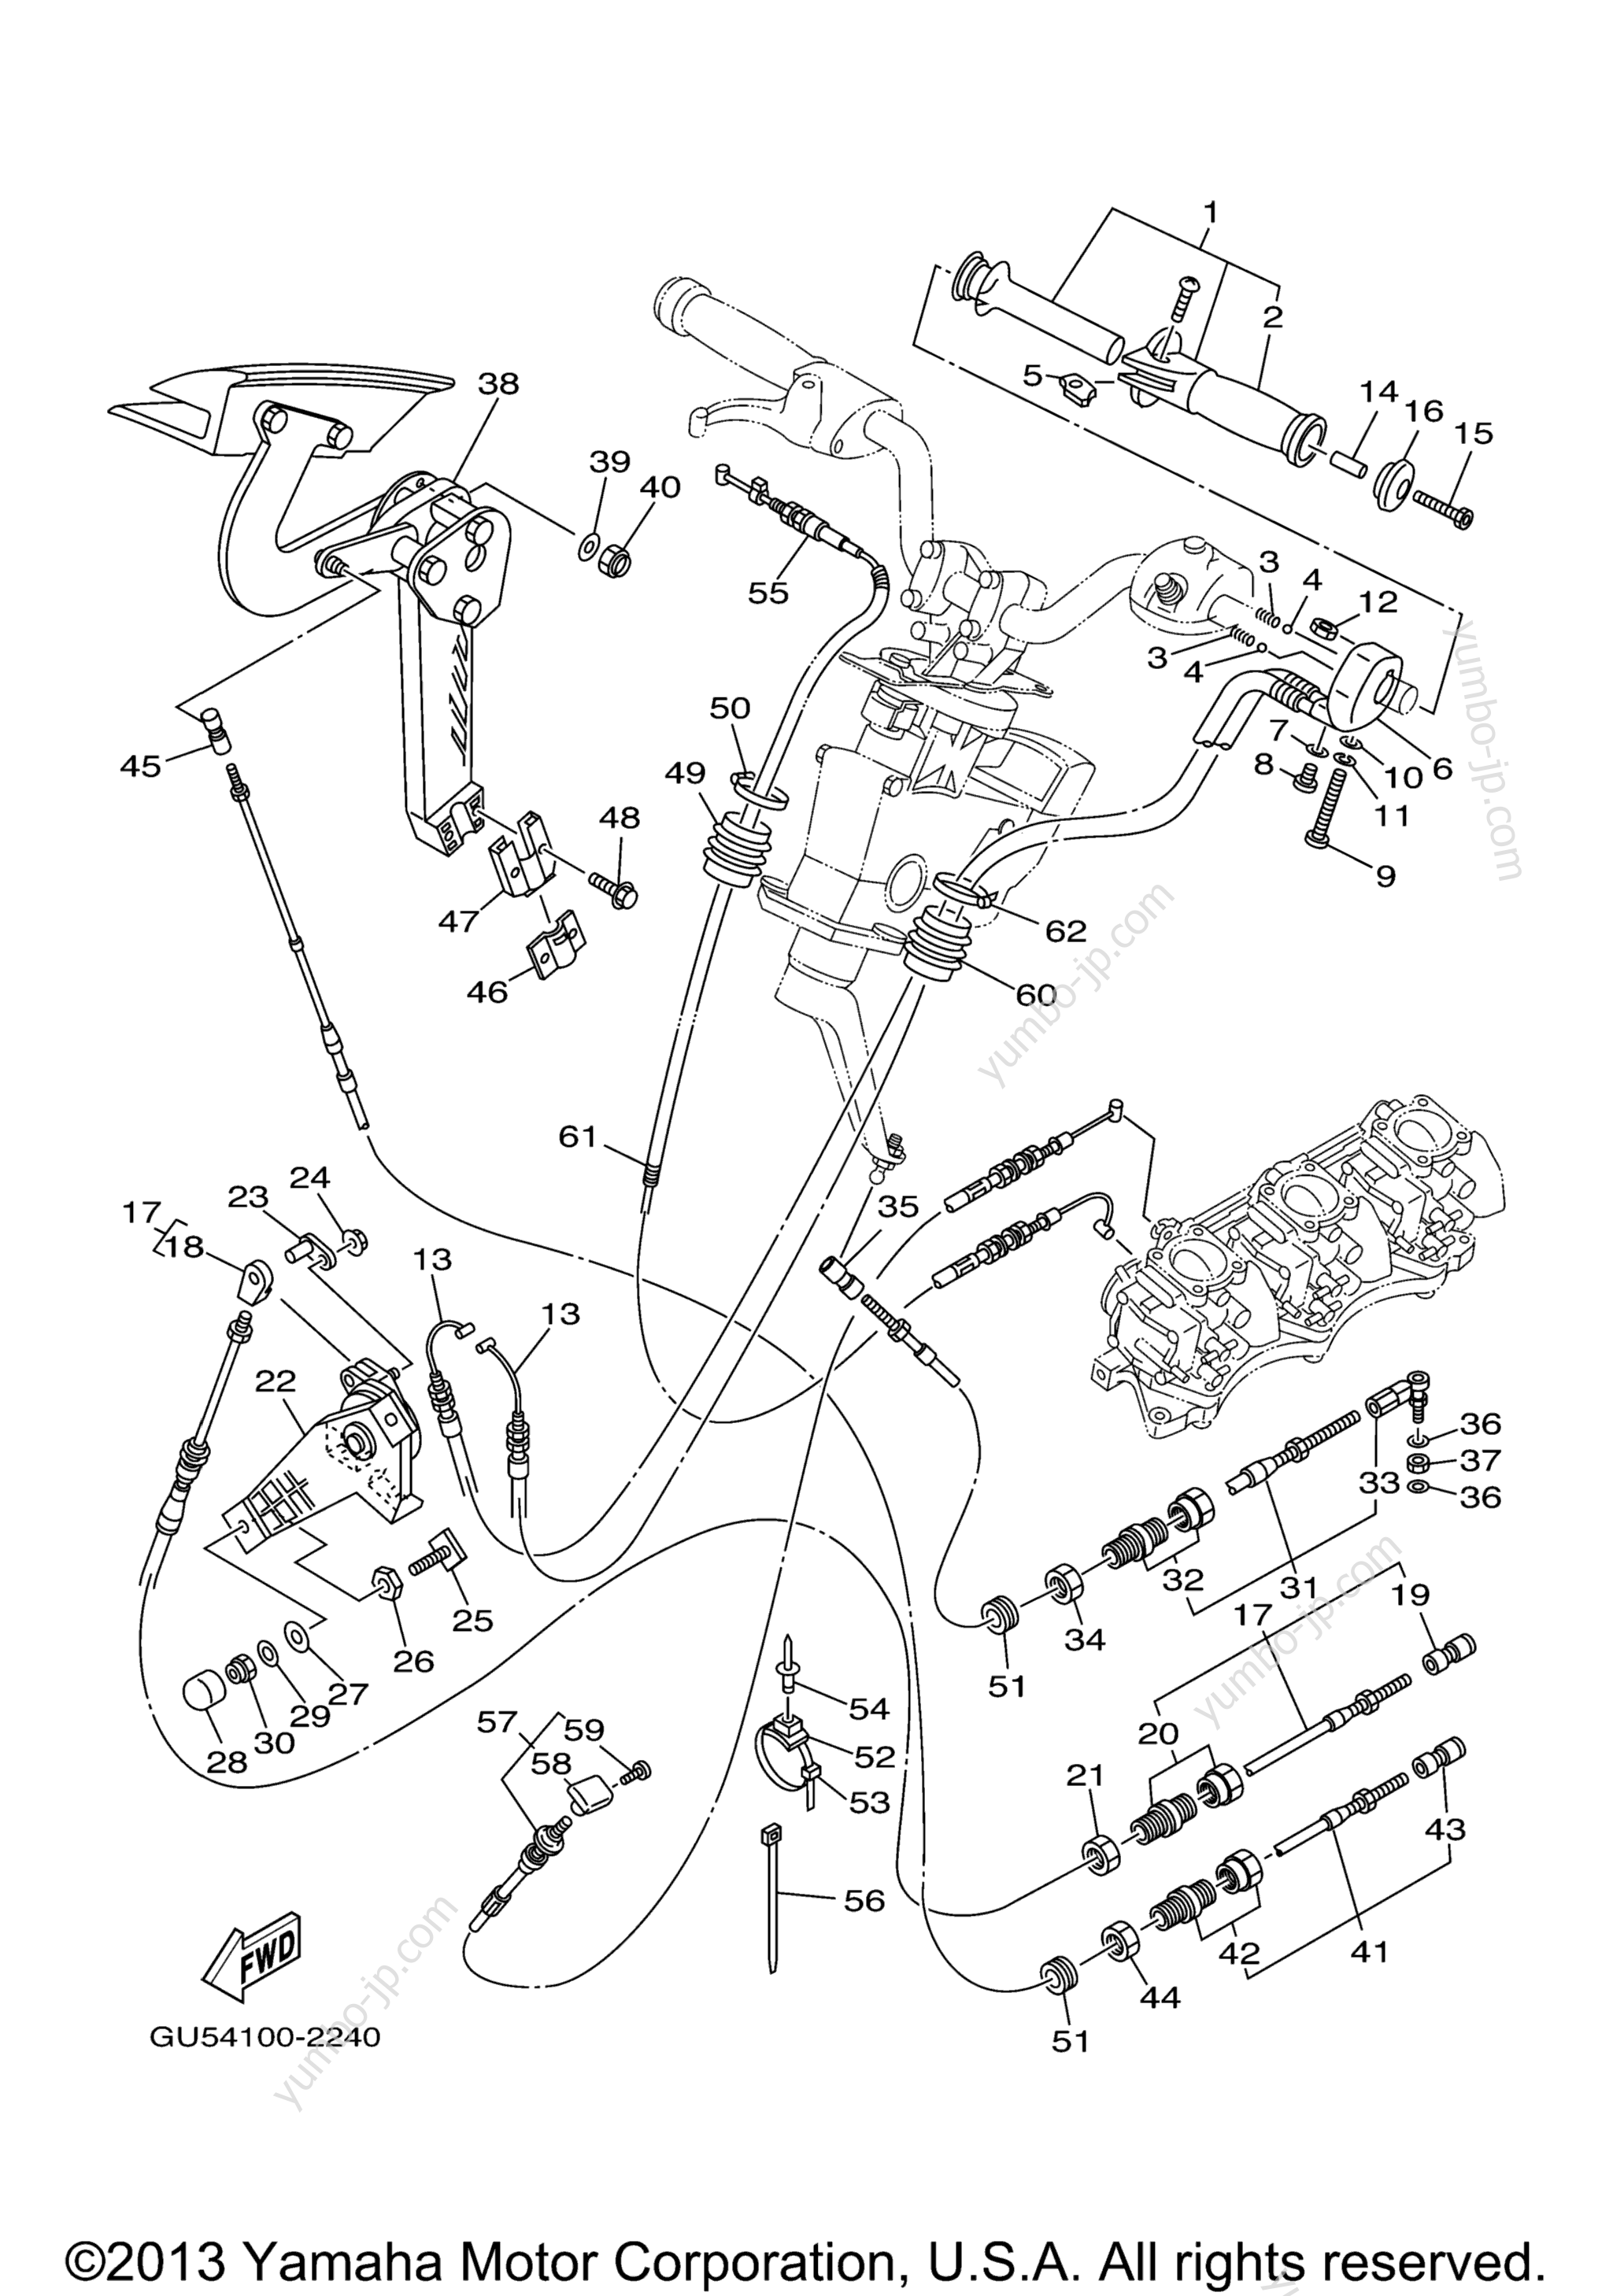 Устройство дистанционного управления / Кабеля для гидроциклов YAMAHA SUV1200 (SV1200A) 2002 г.